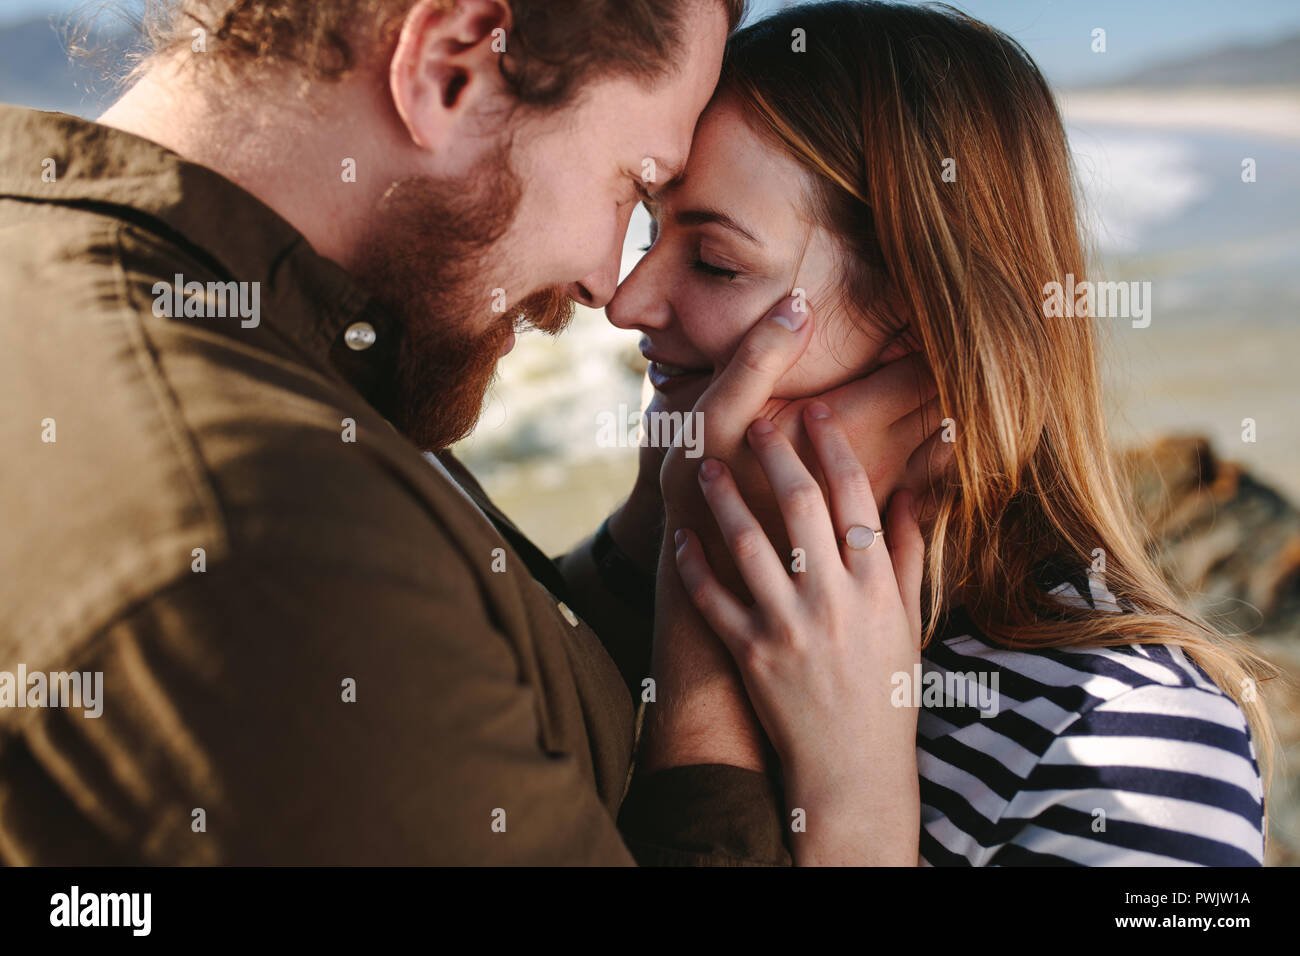 Close up of beard homme avec femme de toucher leur front à une plage. Couple romantique sur la plage. Banque D'Images